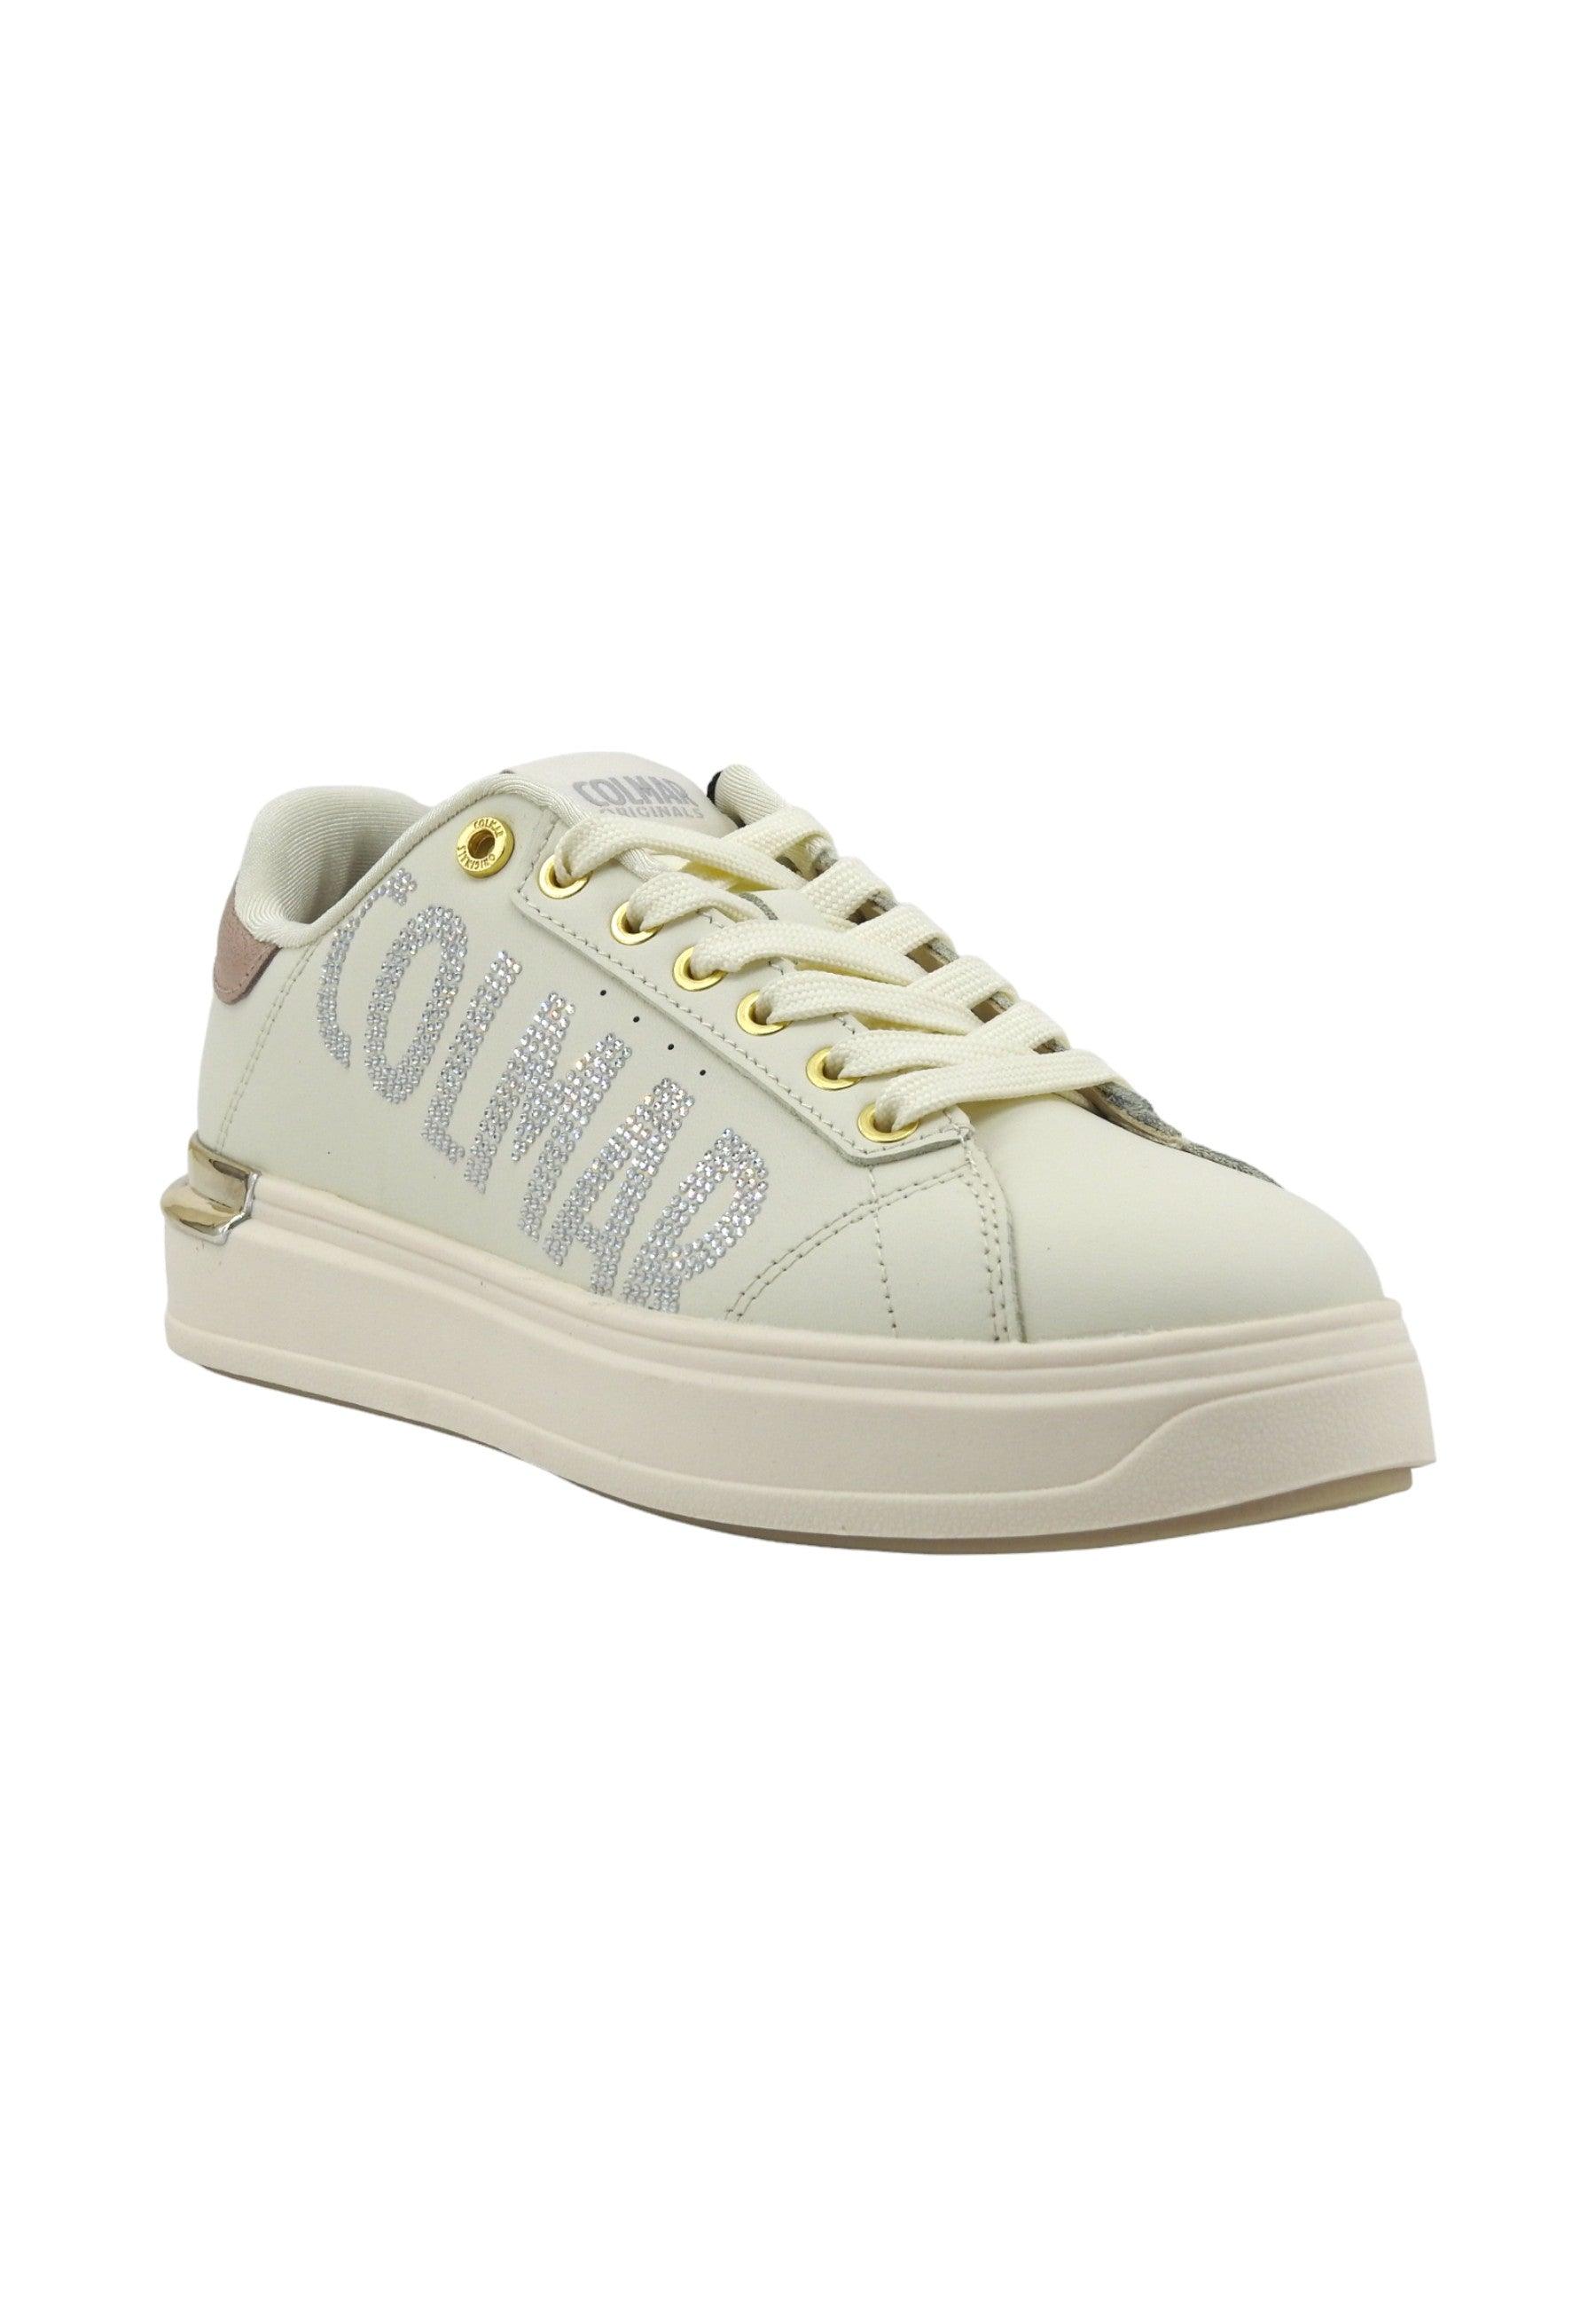 COLMAR Sneaker Donna White Gold Silver CLAYTON STRASS OFF - Sandrini Calzature e Abbigliamento